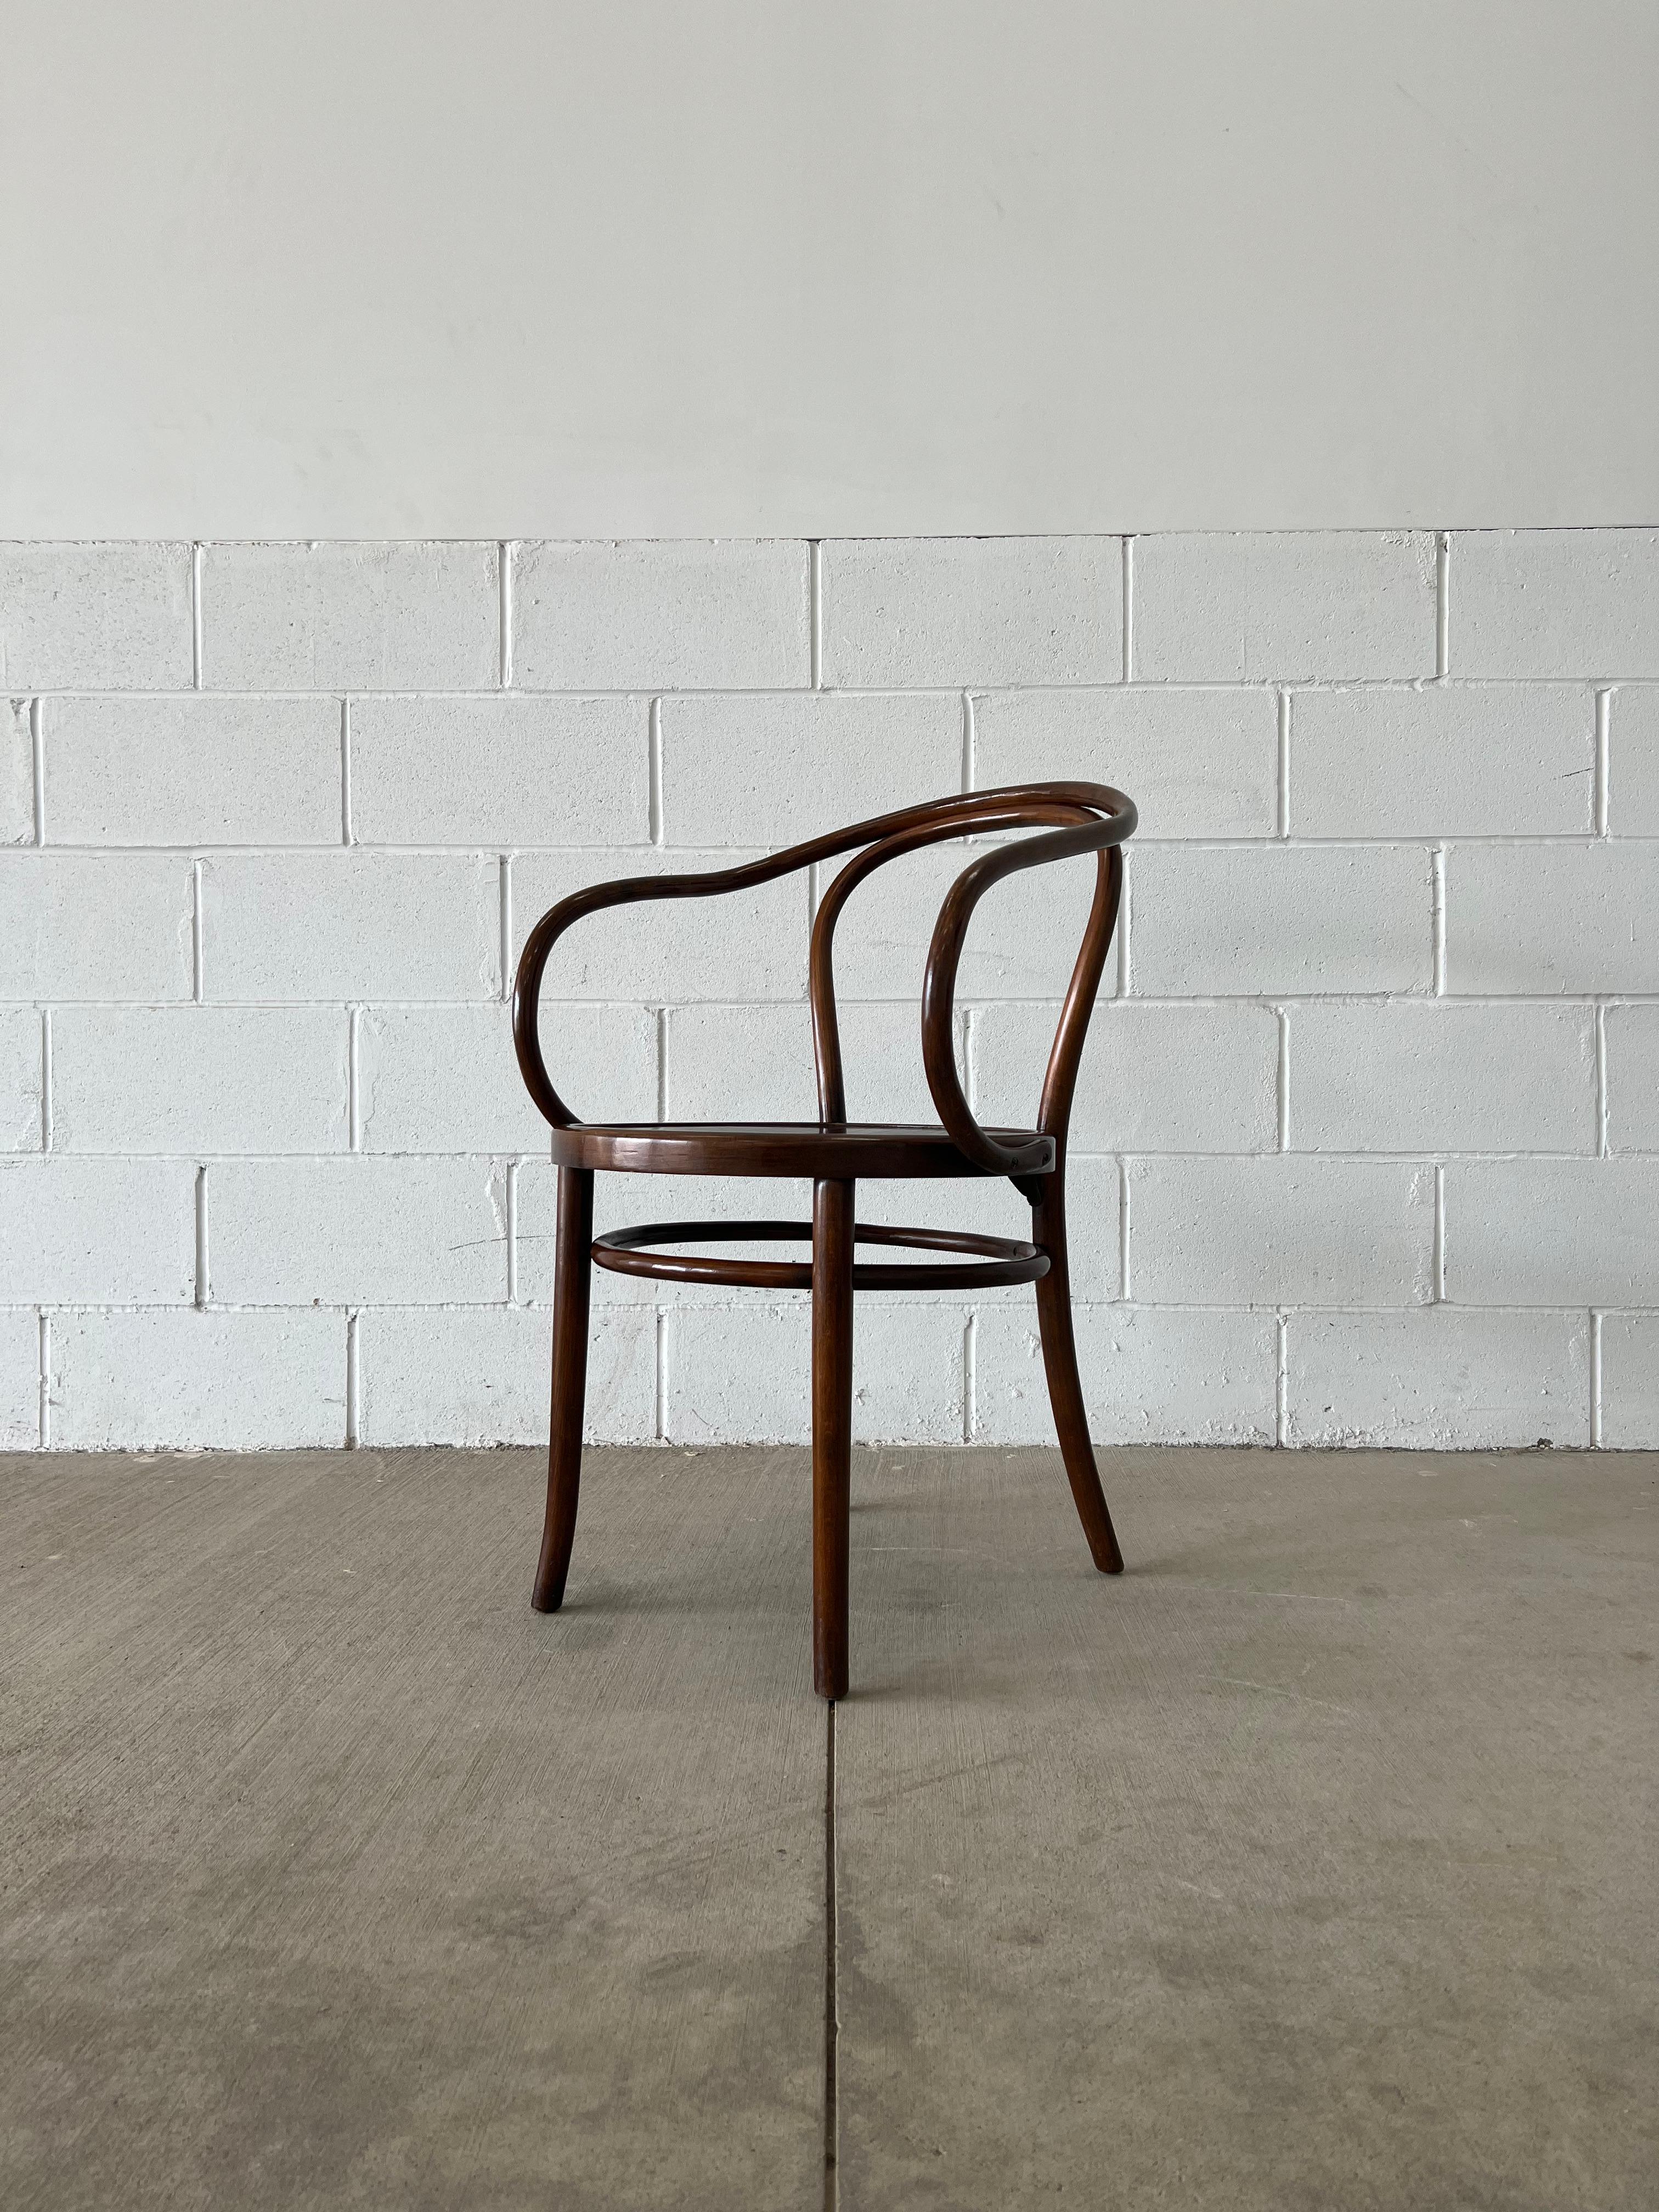 L'emblématique chaise Thonet 209 de Gebrüder Thonet, composée de seulement six parties, était l'une des préférées de l'architecte suisse Le Corbusier.

Six totaux sont disponibles pour créer un grand ensemble de sièges. 